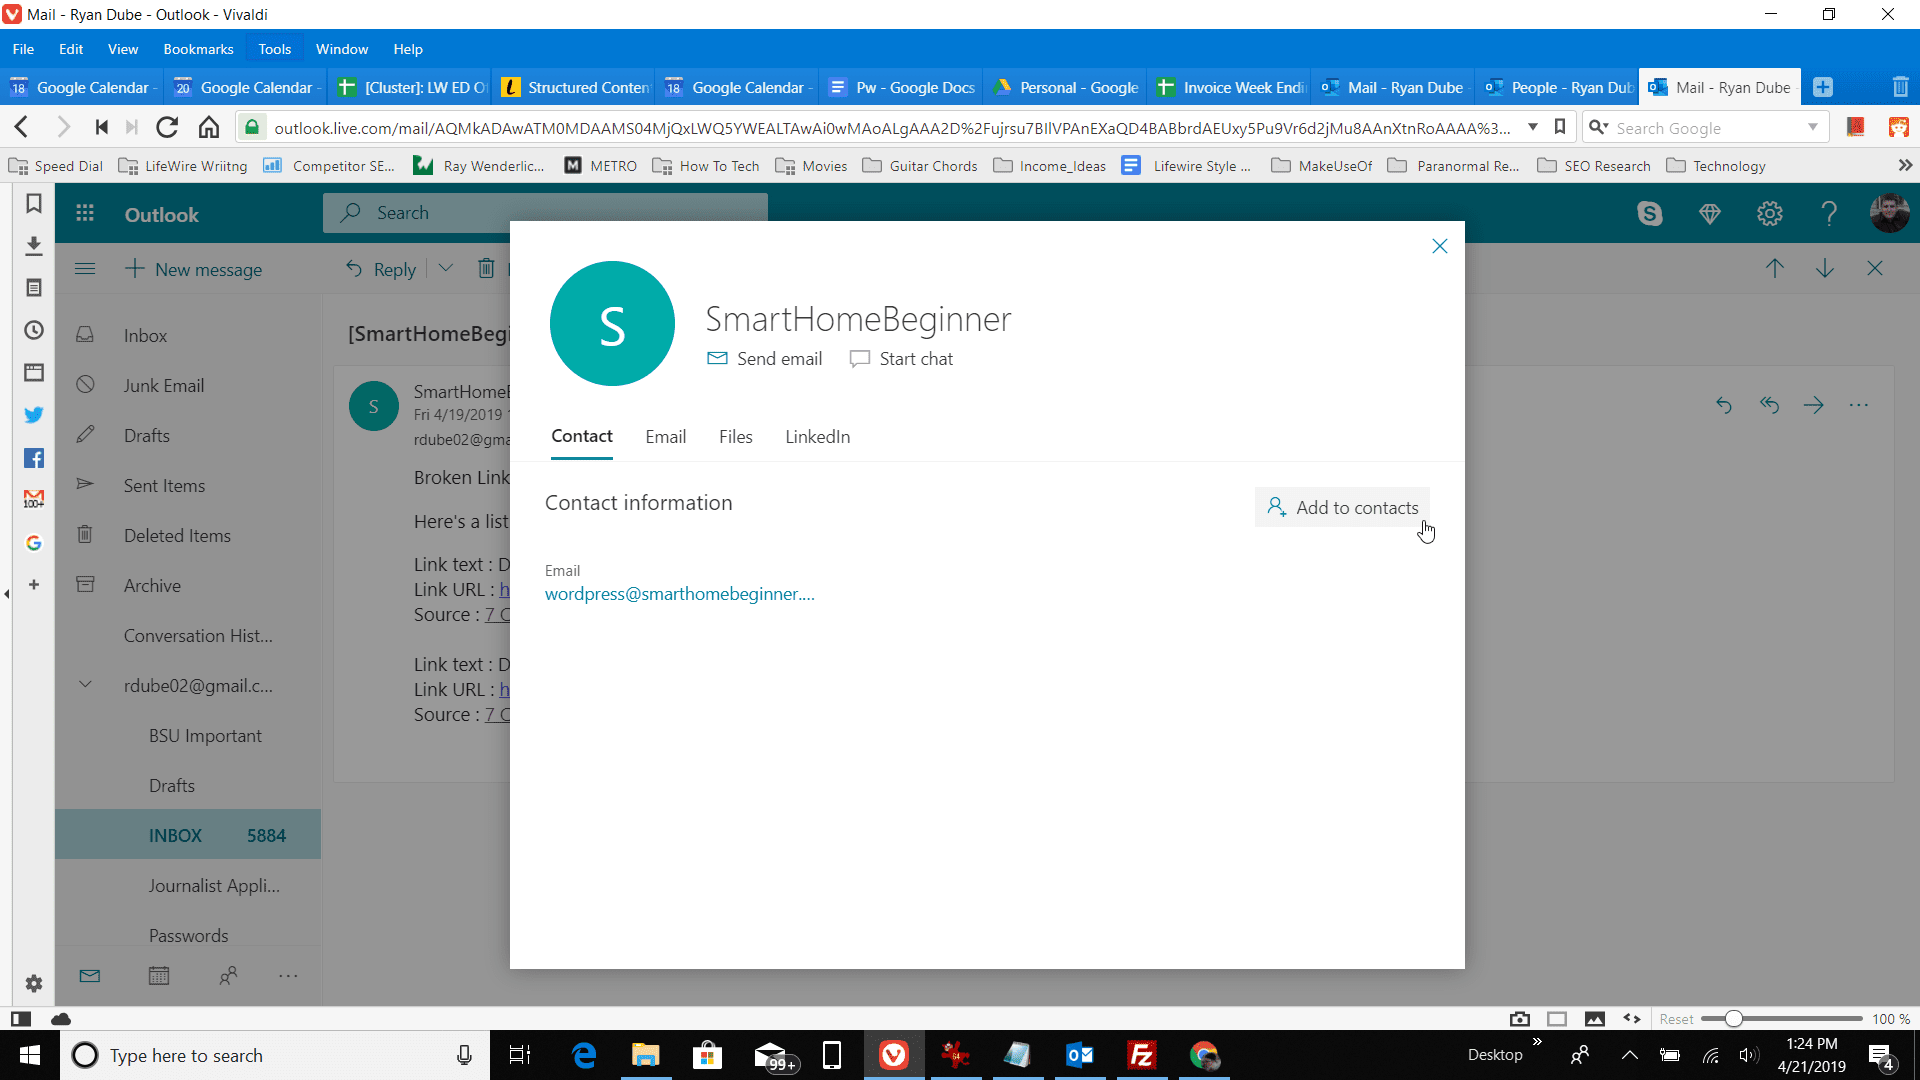 Captura de tela do botão Adicionar aos contatos no Outlook.com